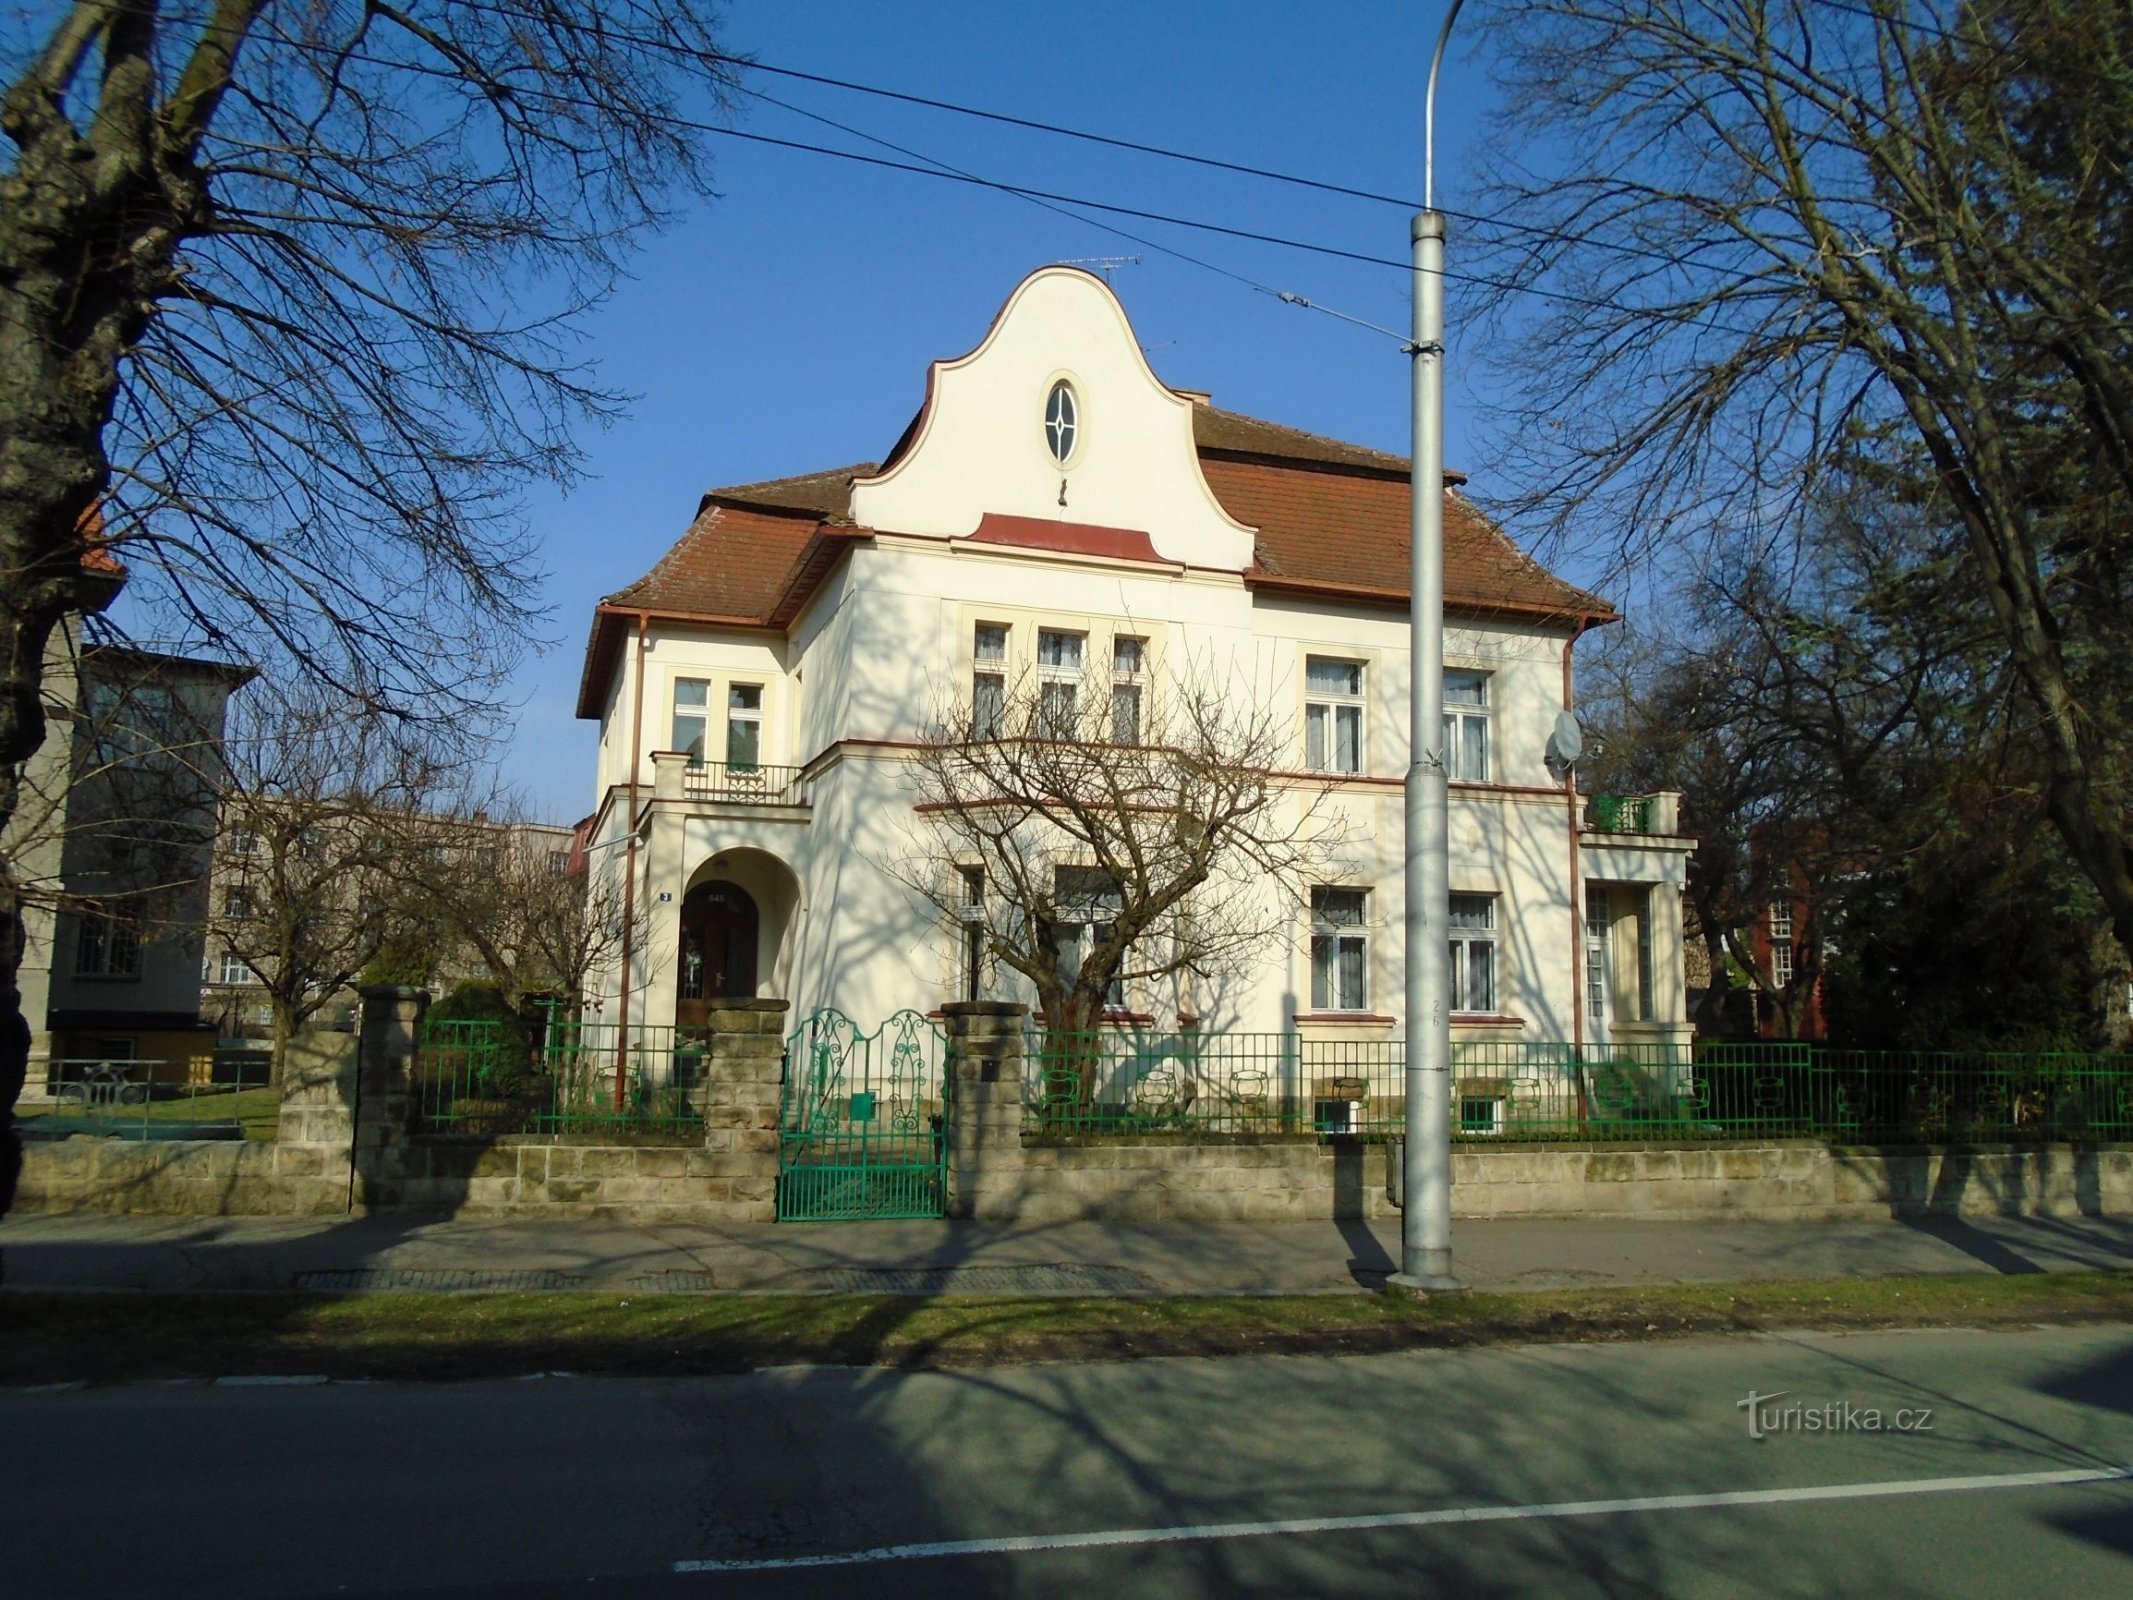 Castello n. 545 (Hradec Králové, 1.4.2018 aprile XNUMX)